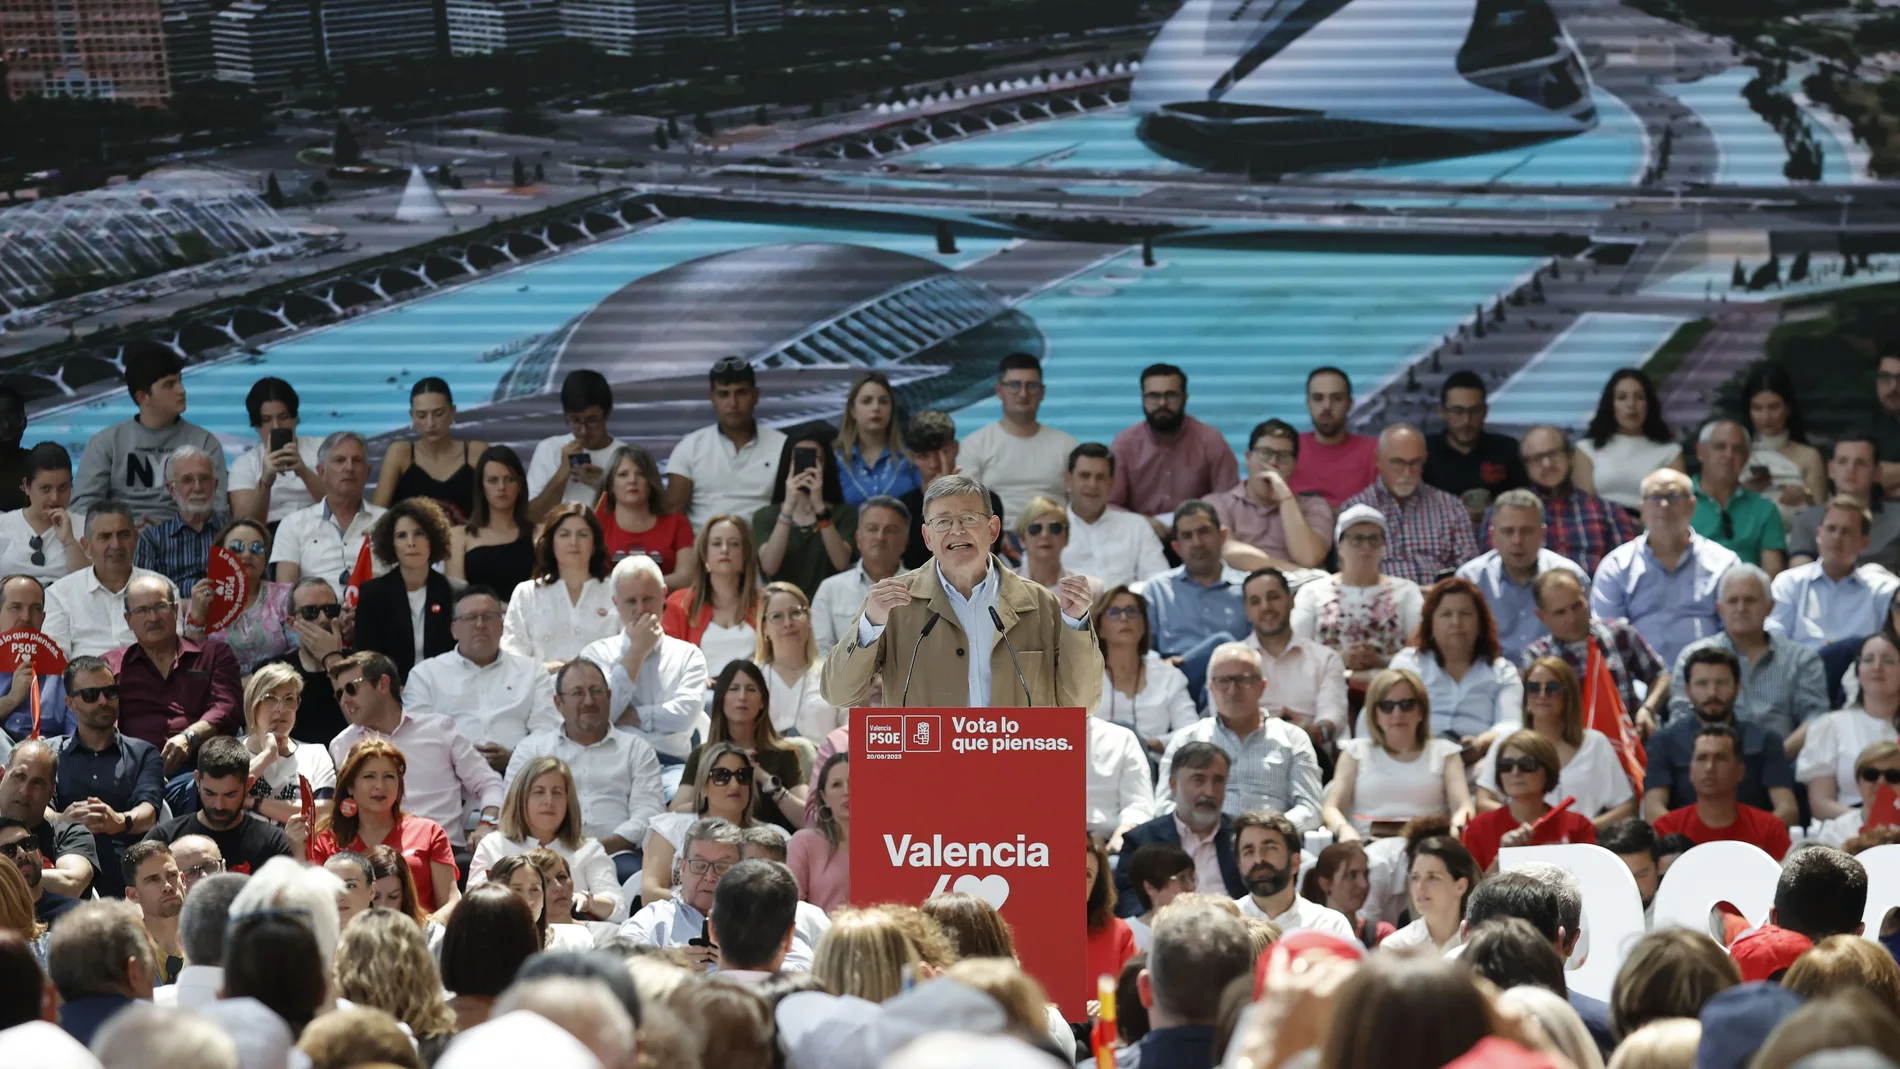 Ximo Puig se apoya a Pedro Sánchez en la recta final de la campaña y clama: "El PP no puede volver"